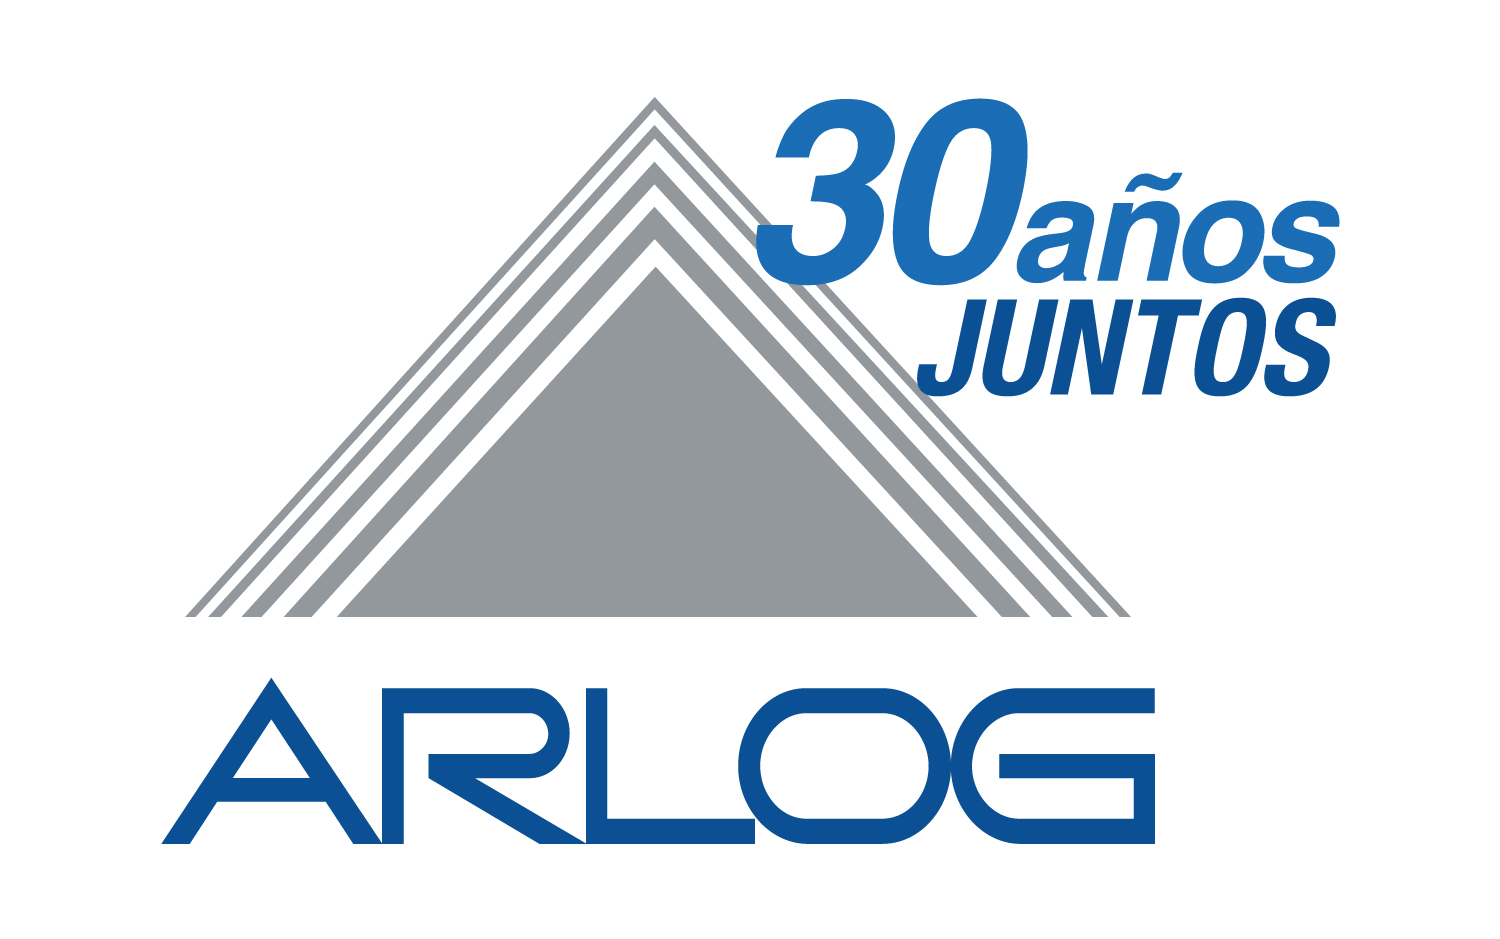 ARLOG cumple 30 años acompañando el crecimiento de la logística argentina